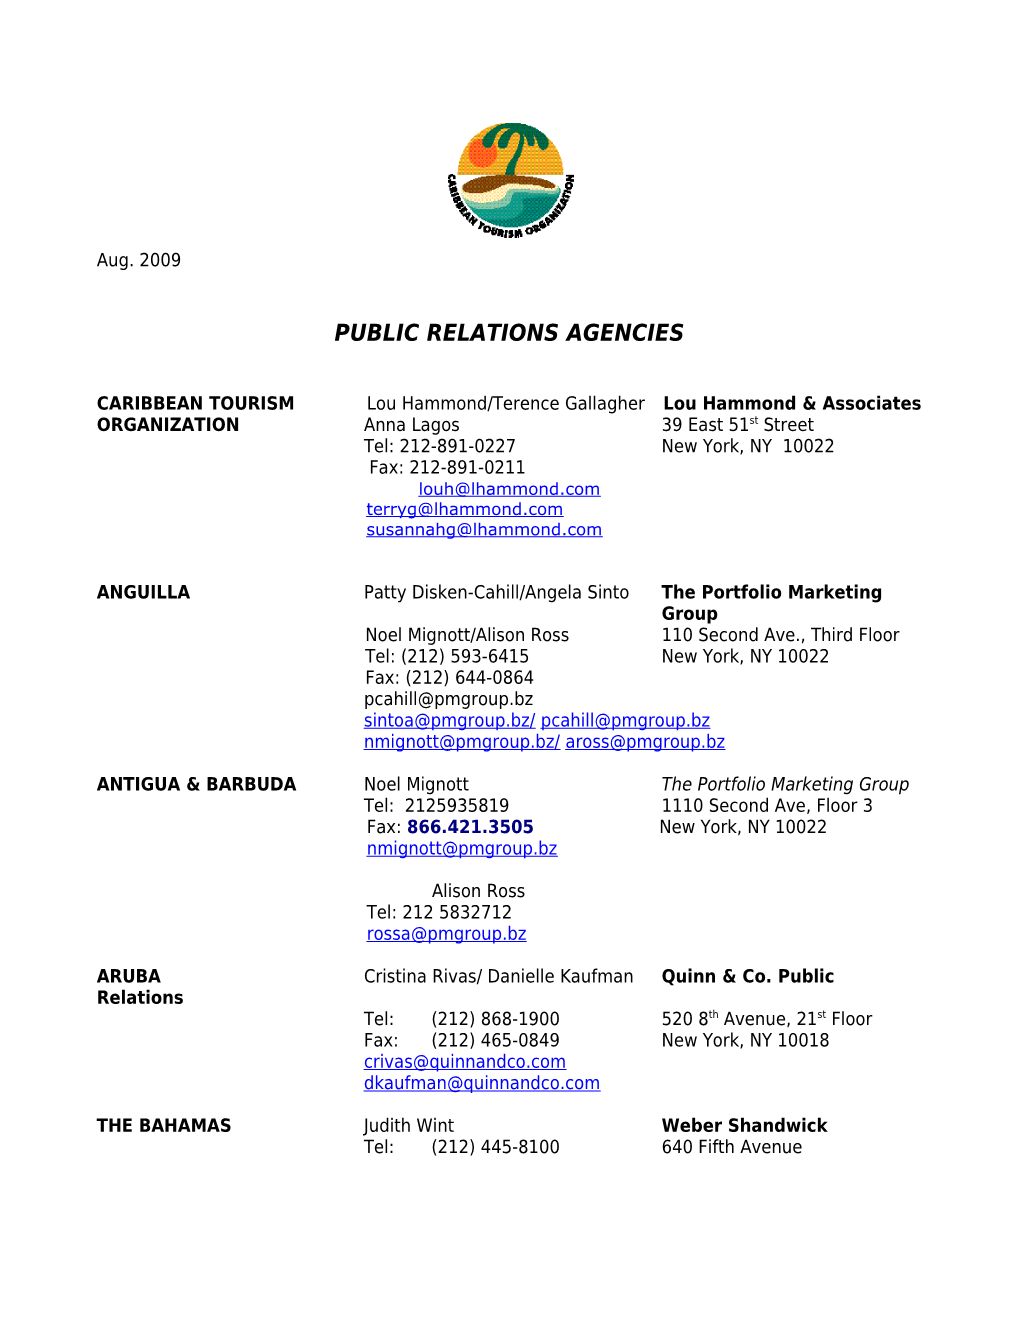 Public Relations Agencies